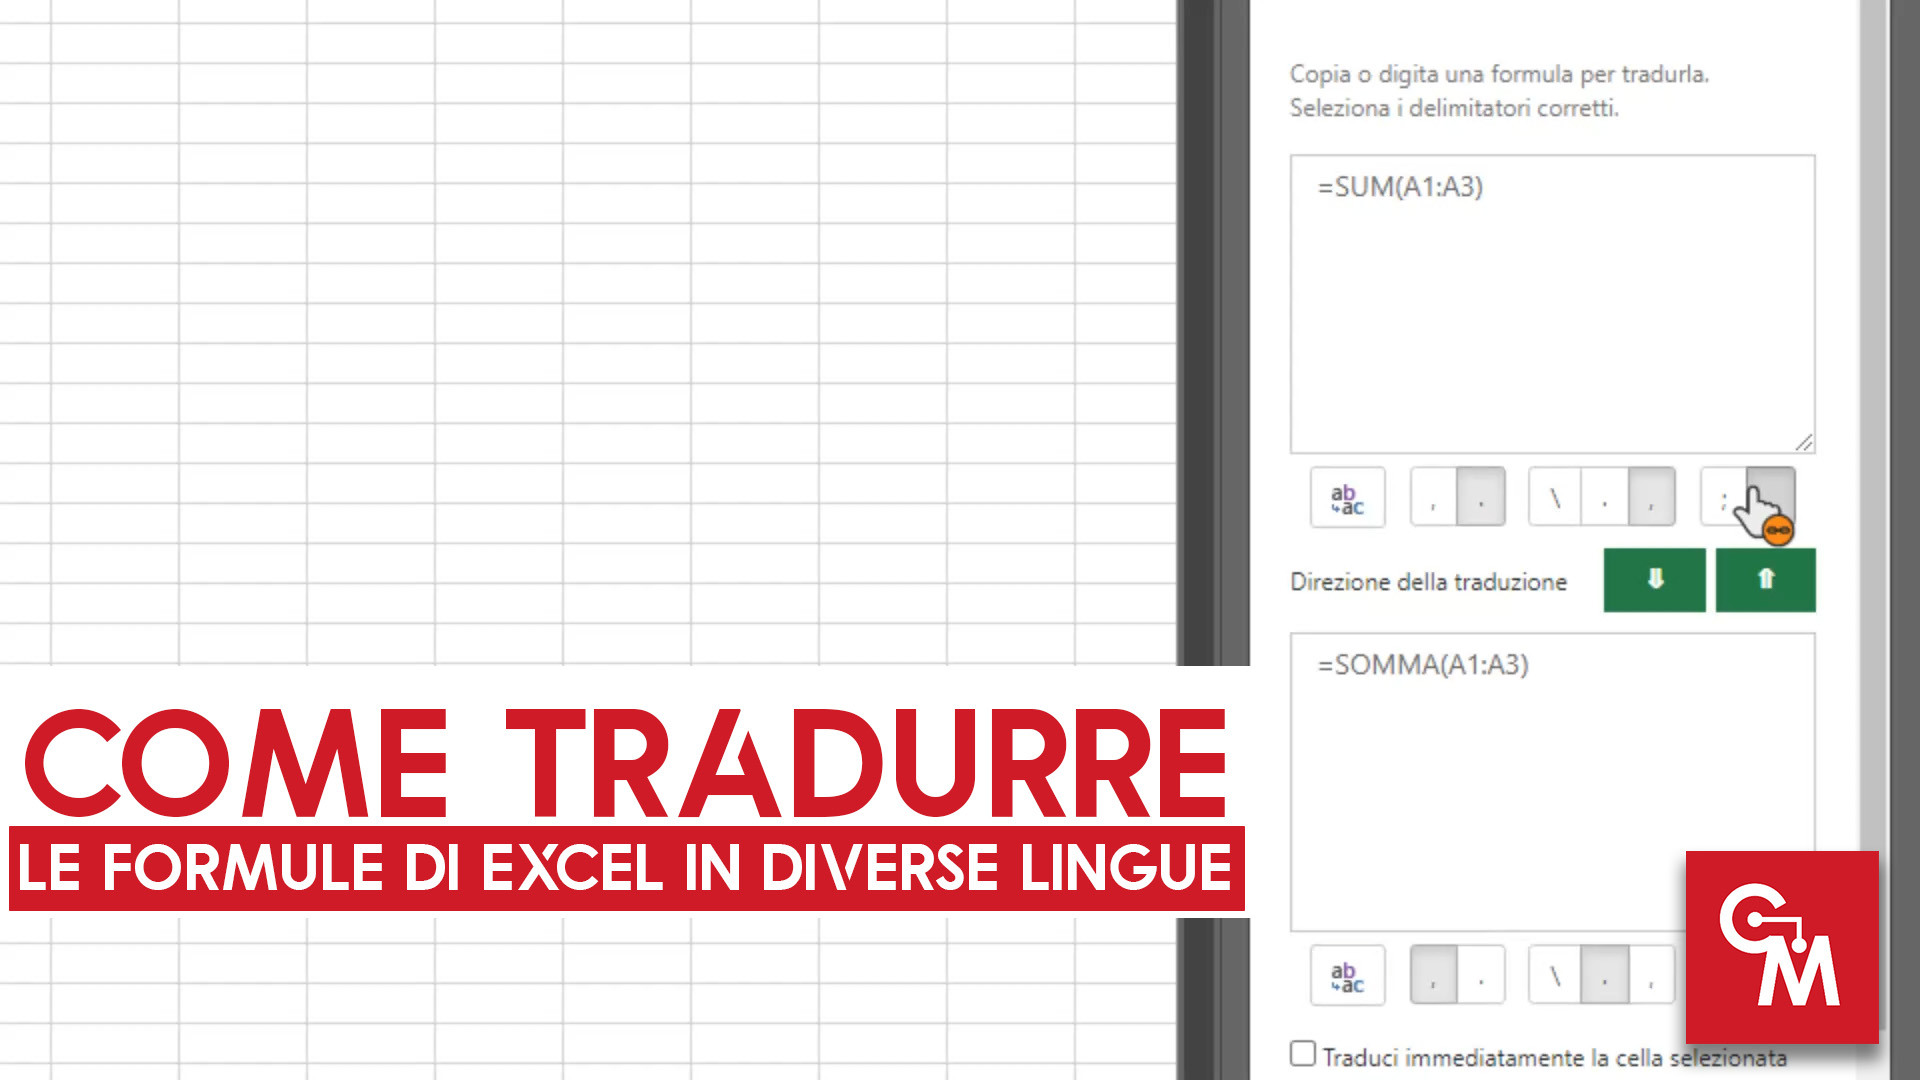 Come tradurre le formule di Excel in diverse lingue